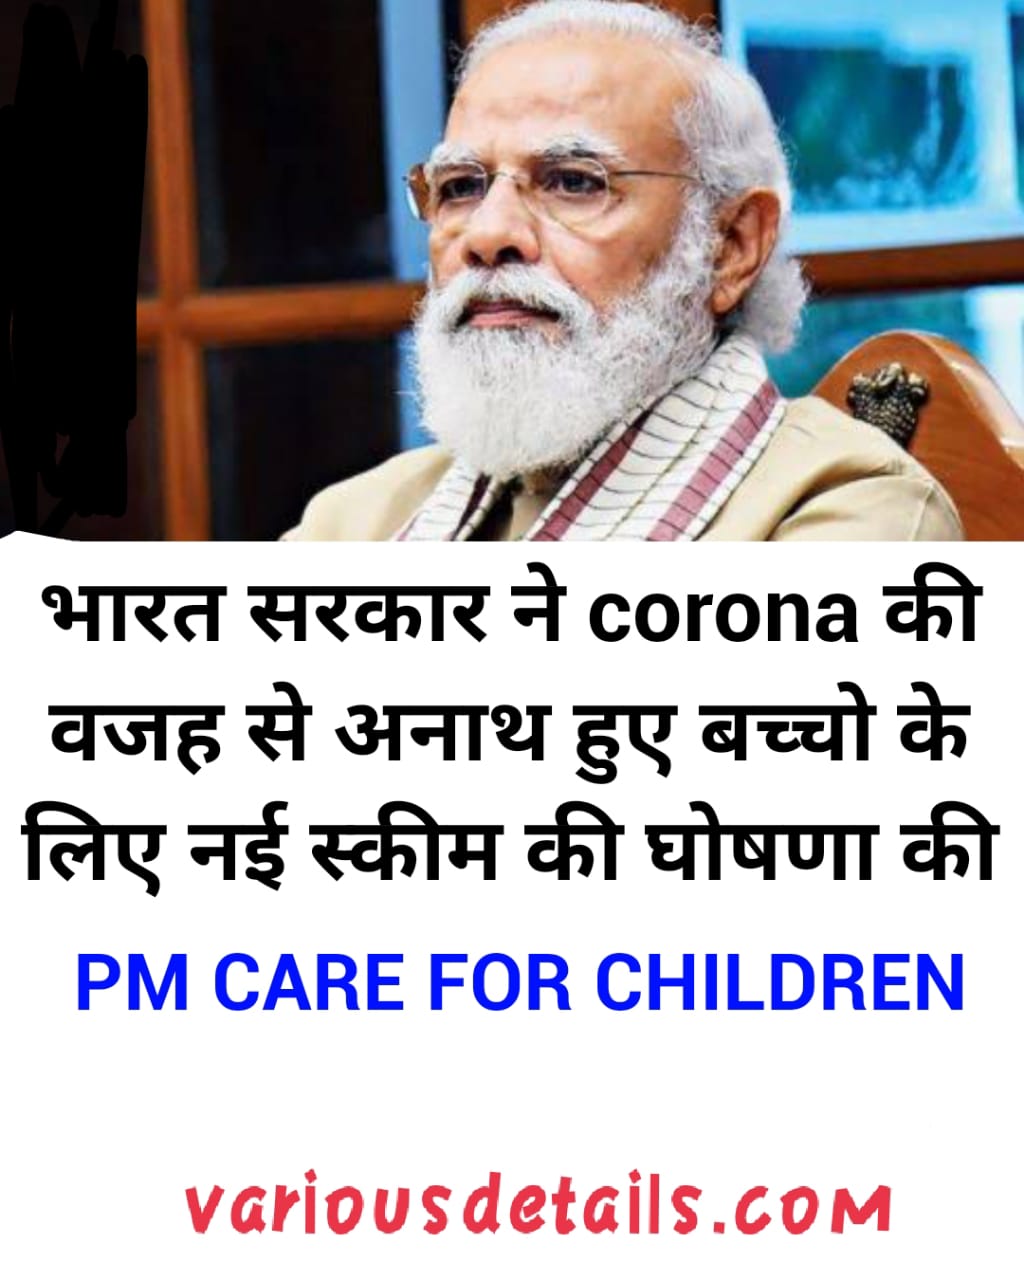 PM care for children scheme in hindi | PM care for children